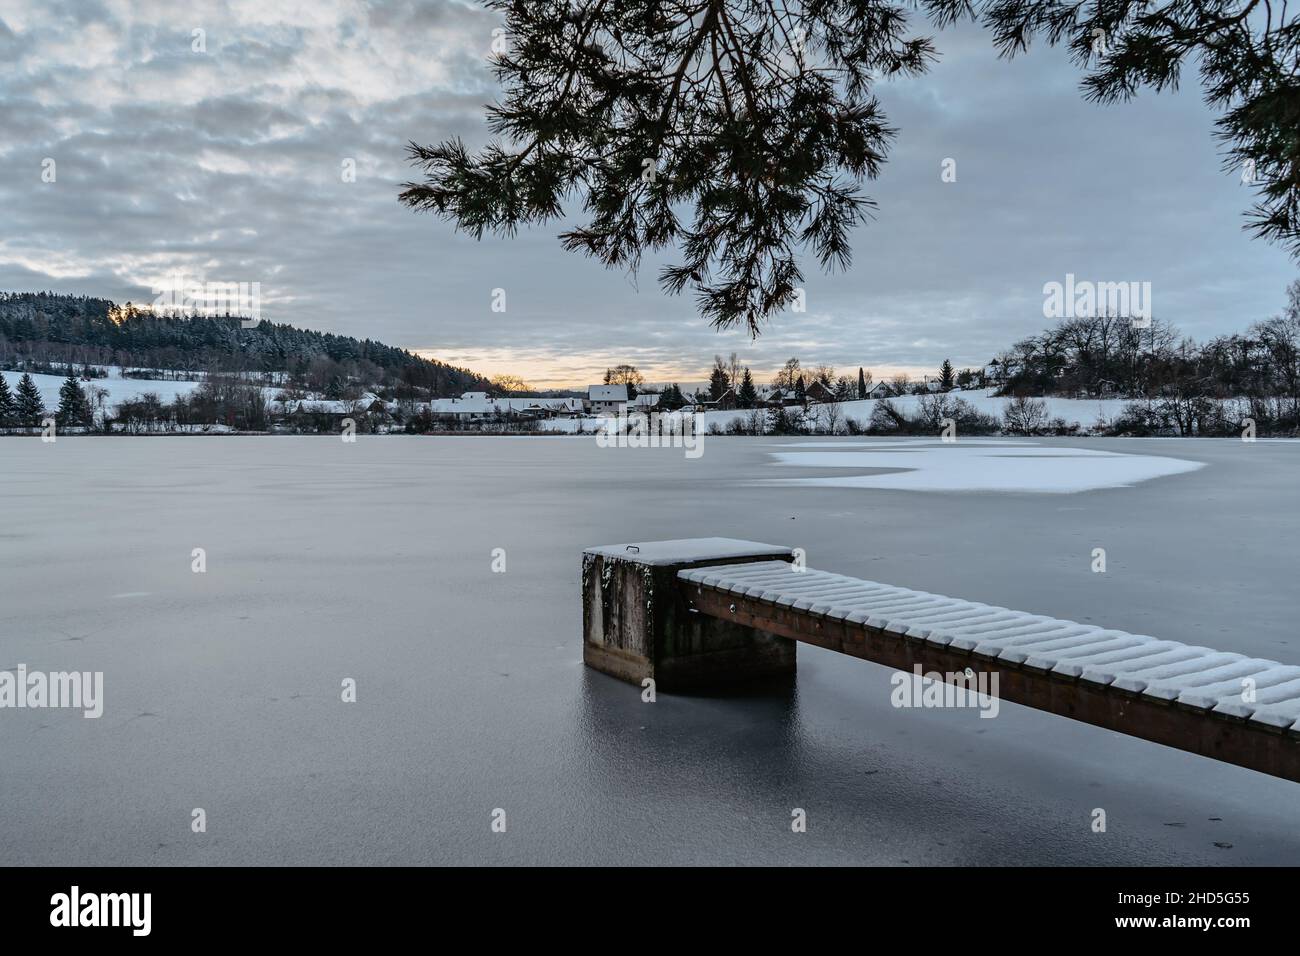 Molo di legno sul lago con neve fresca. Stagno di inverno con piccolo molo all'alba, villaggio in backround.Frosty paesaggio calmo. Bianco inverno campagna nevoso Foto Stock